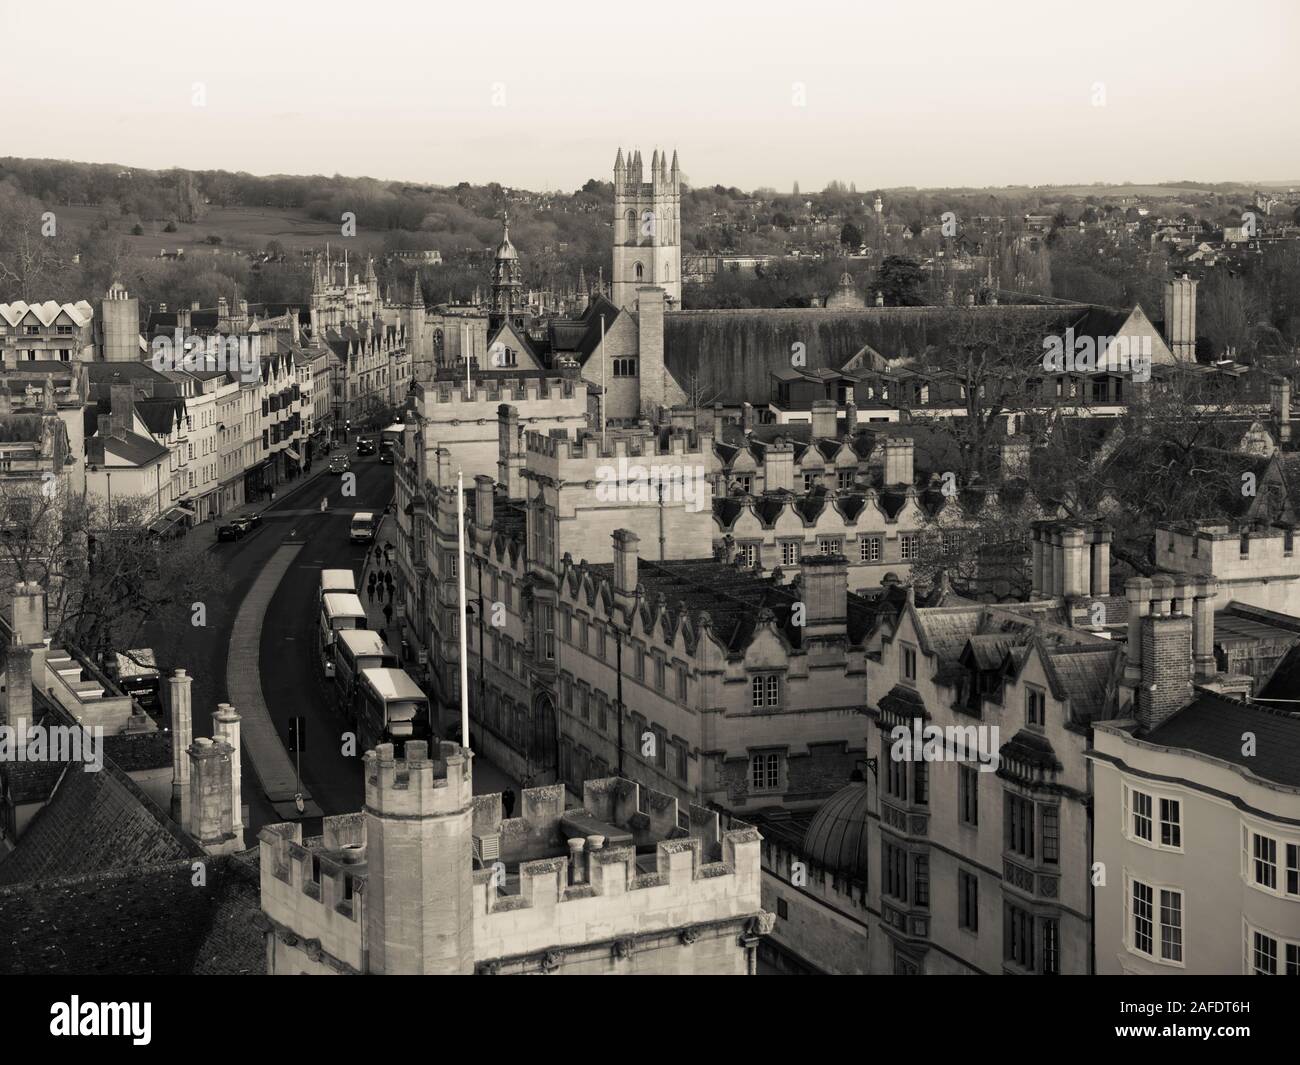 Paisaje en blanco y negro de Magdalen Tower, de la Universidad de Oxford, Oxford, Inglaterra, Reino Unido, GB. Foto de stock